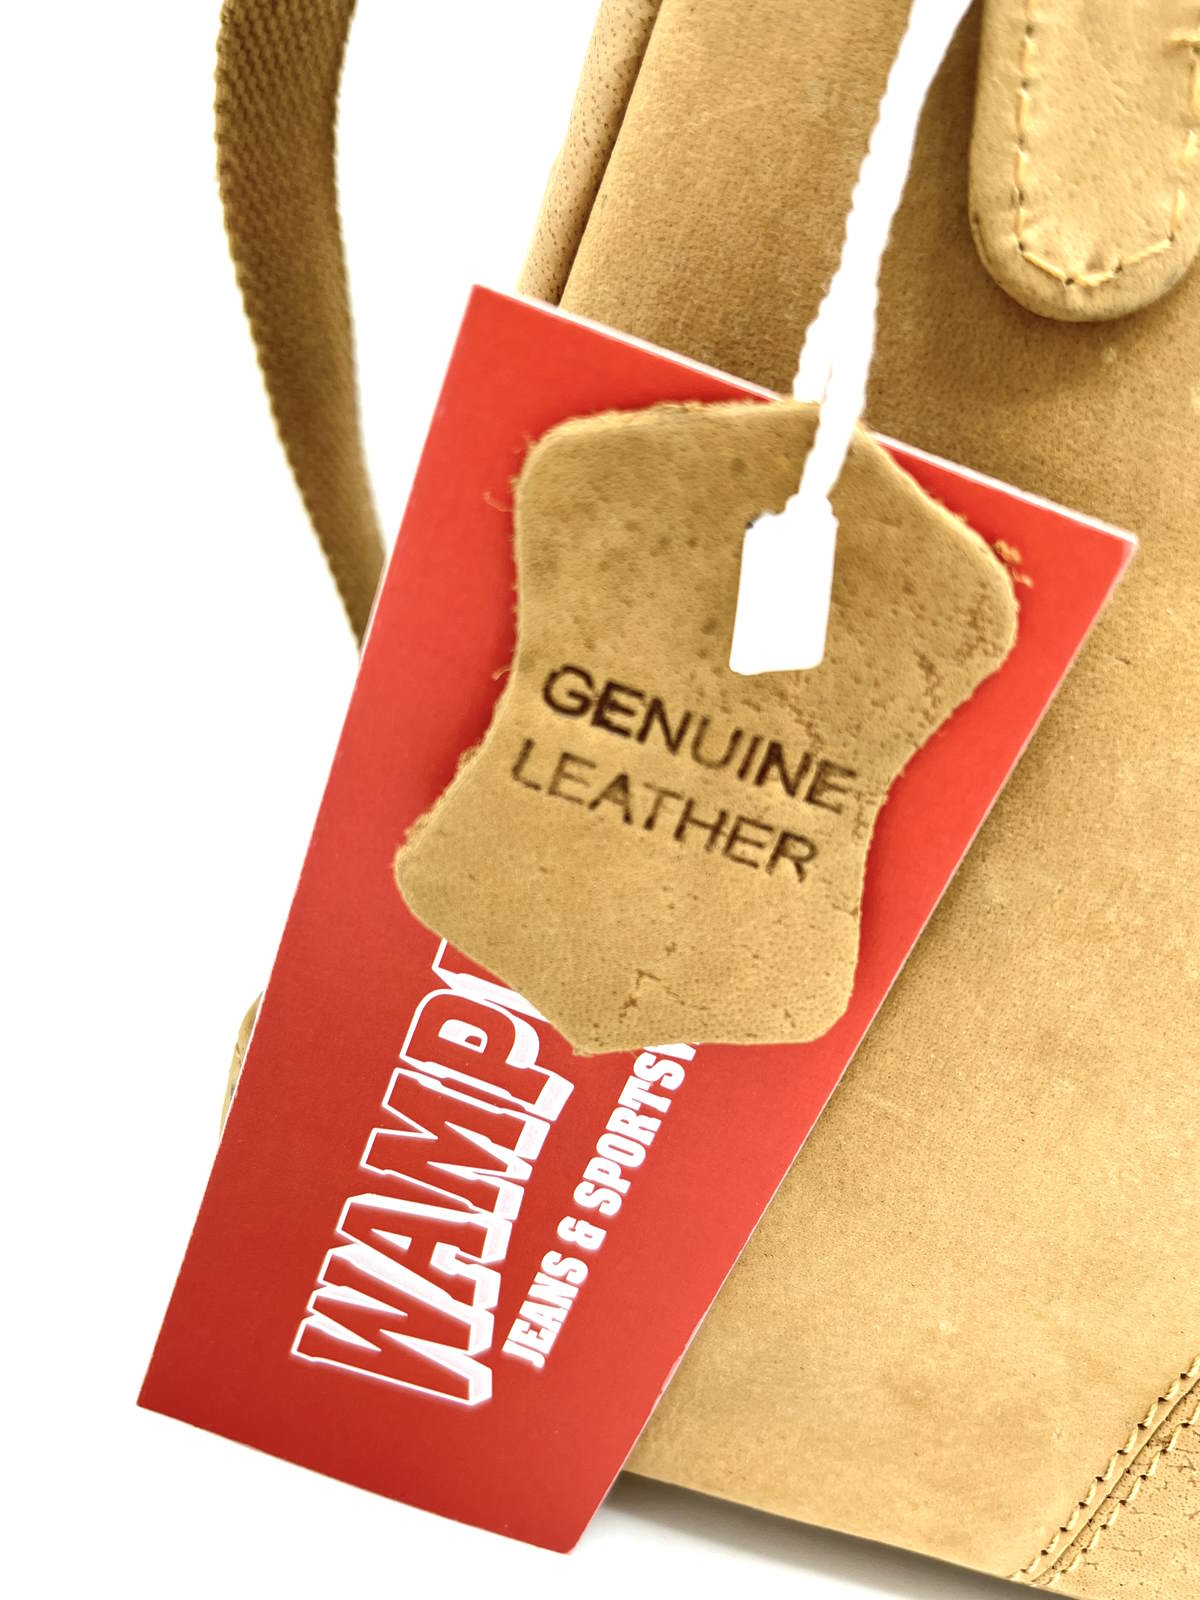 Brand WAMPUM, Genuine Leather Messenger Bag, art. BAG220.425